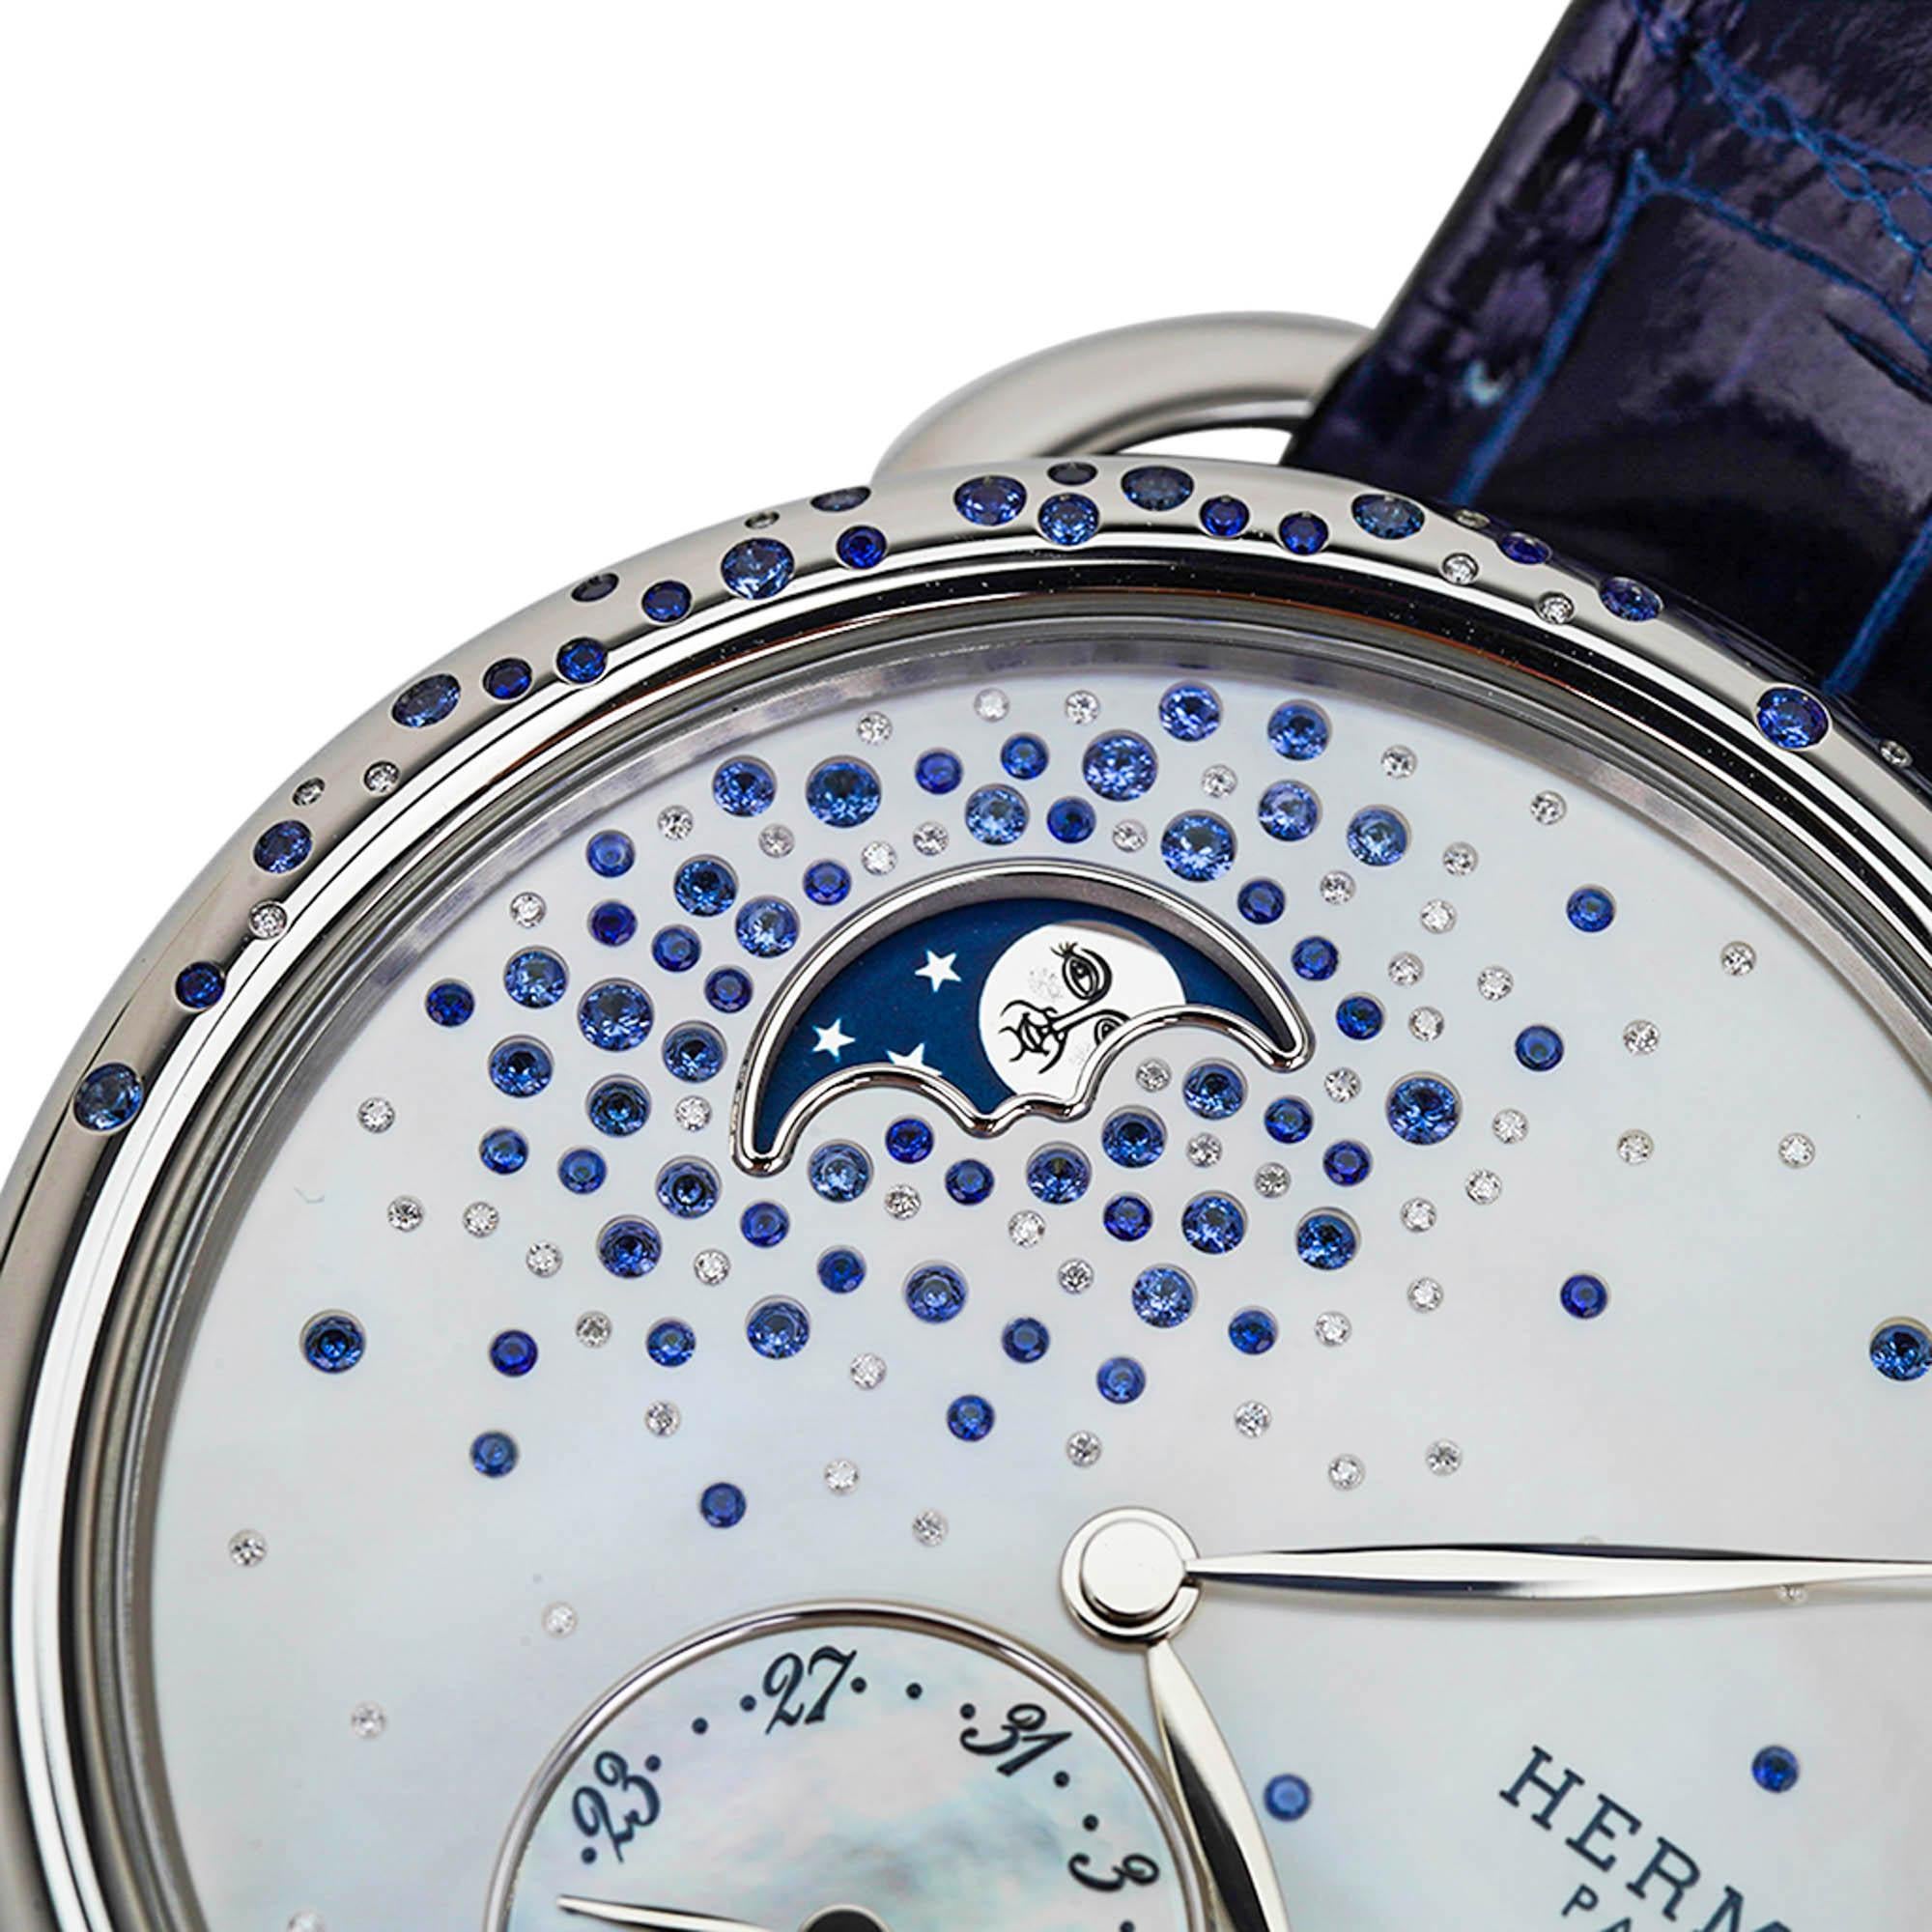 Mightychic bietet eine Hermes Arceau Petite Lune Uhr in der 38 mm großen Ausführung an.
Diese wunderschöne mit Diamanten und Saphiren besetzte Uhr ist mit Edelsteinen auf der Lünette und auf dem
Zifferblatt aus Perlmutt.
Die Mondphasenanzeige hat